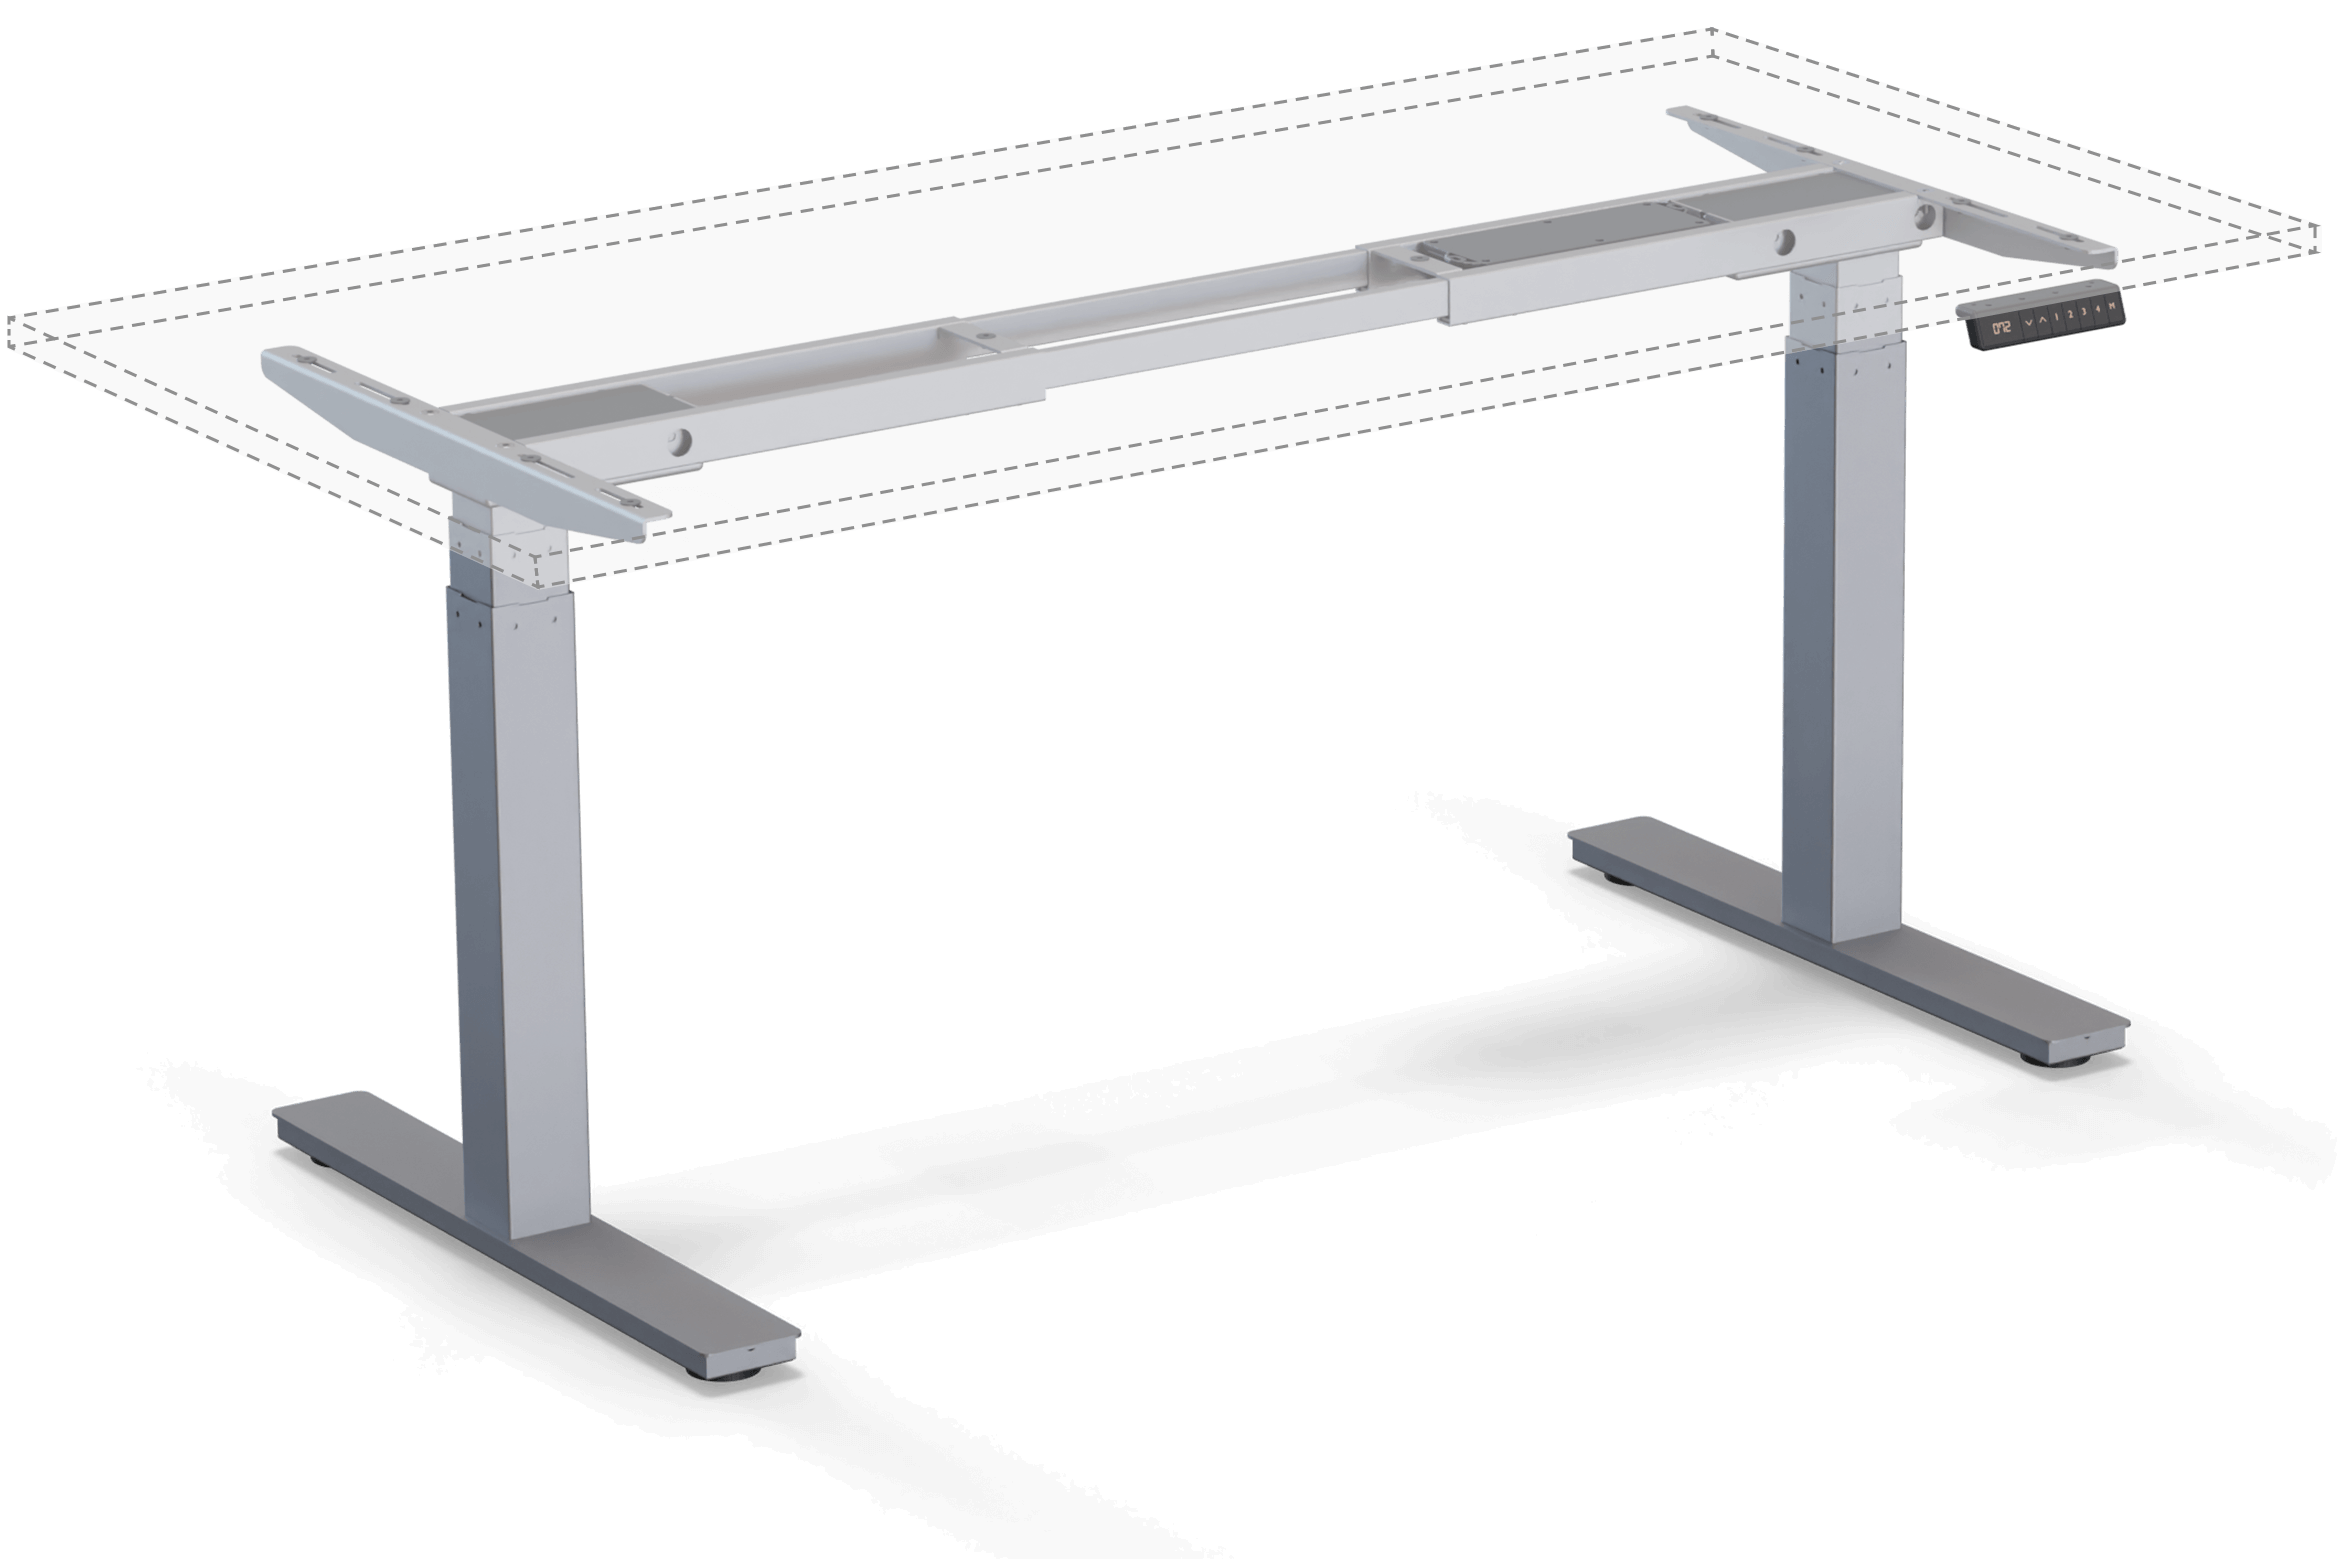 höhenverstellbares Tischgestell - Modell Pro mit Tischplatte